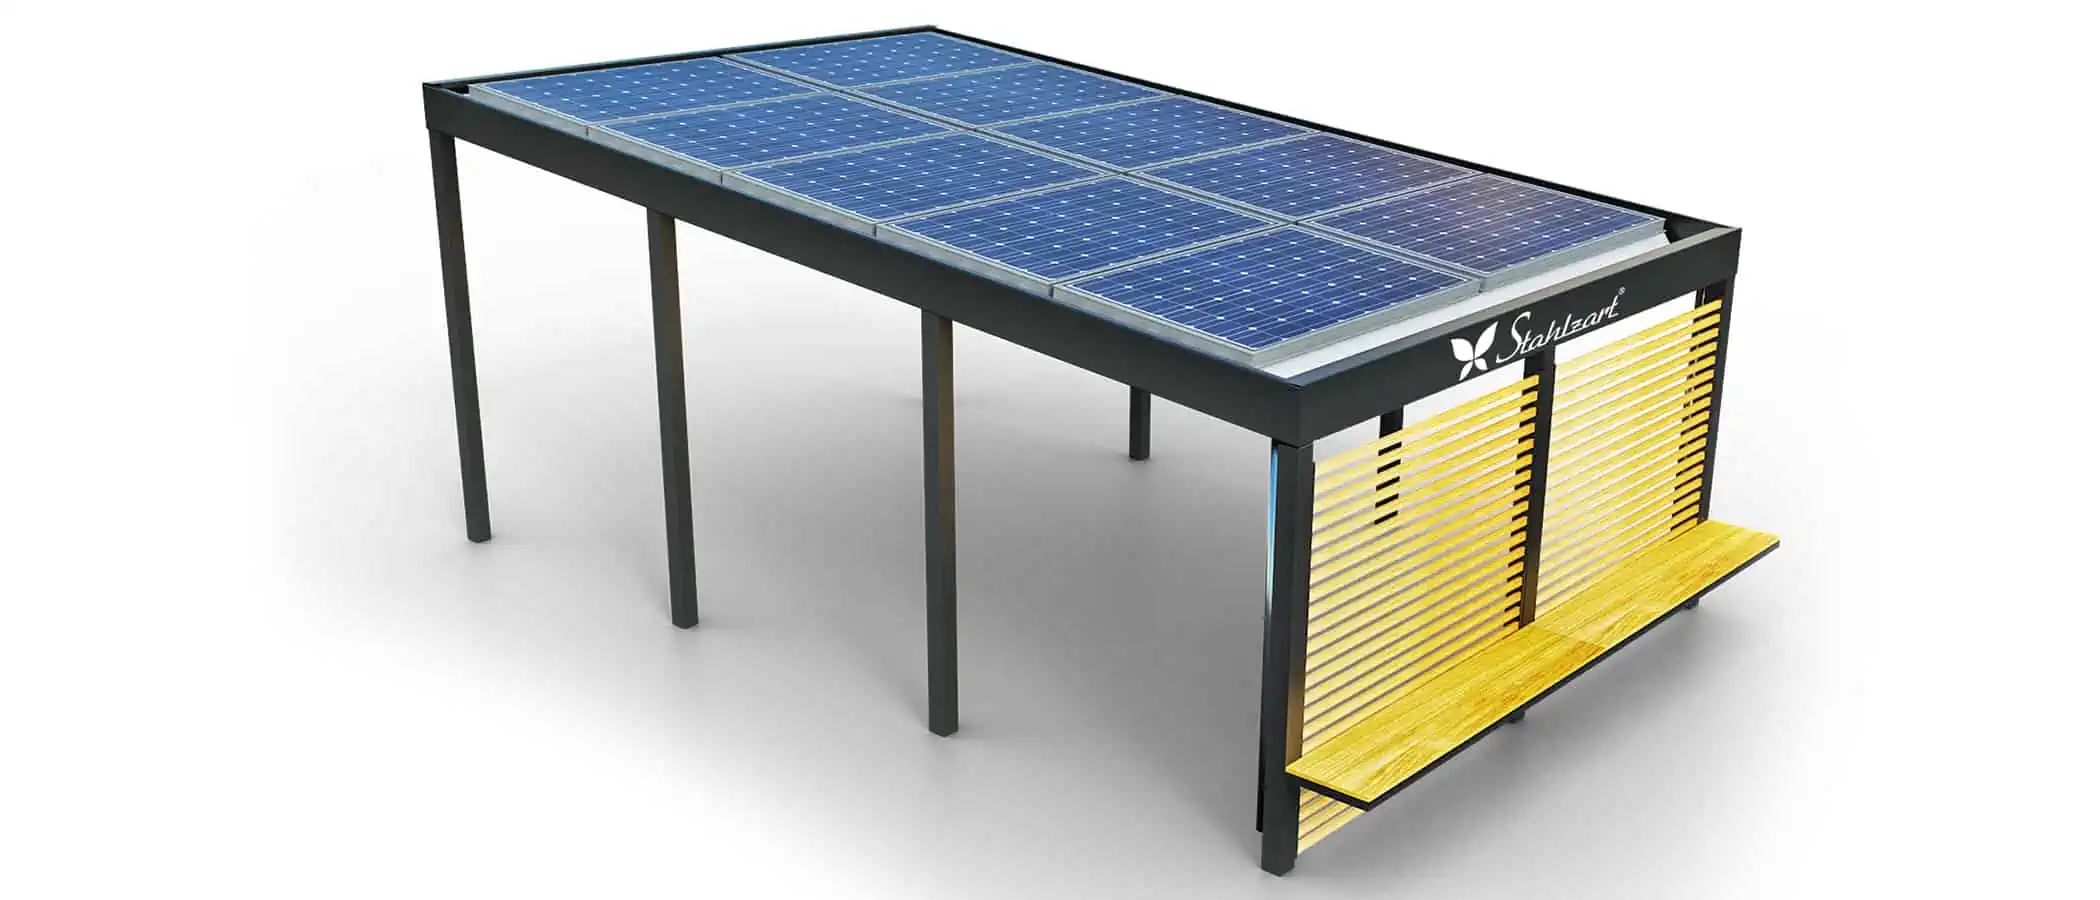 solar-carport-mit-pultdach-carports-solarcarport-pultdach-carportdach-design-strom-angebot-photovoltaikanlage-module-solardach-metall-stahl-holz-laerche-seitenwand-mit-bank-design-stahlzart